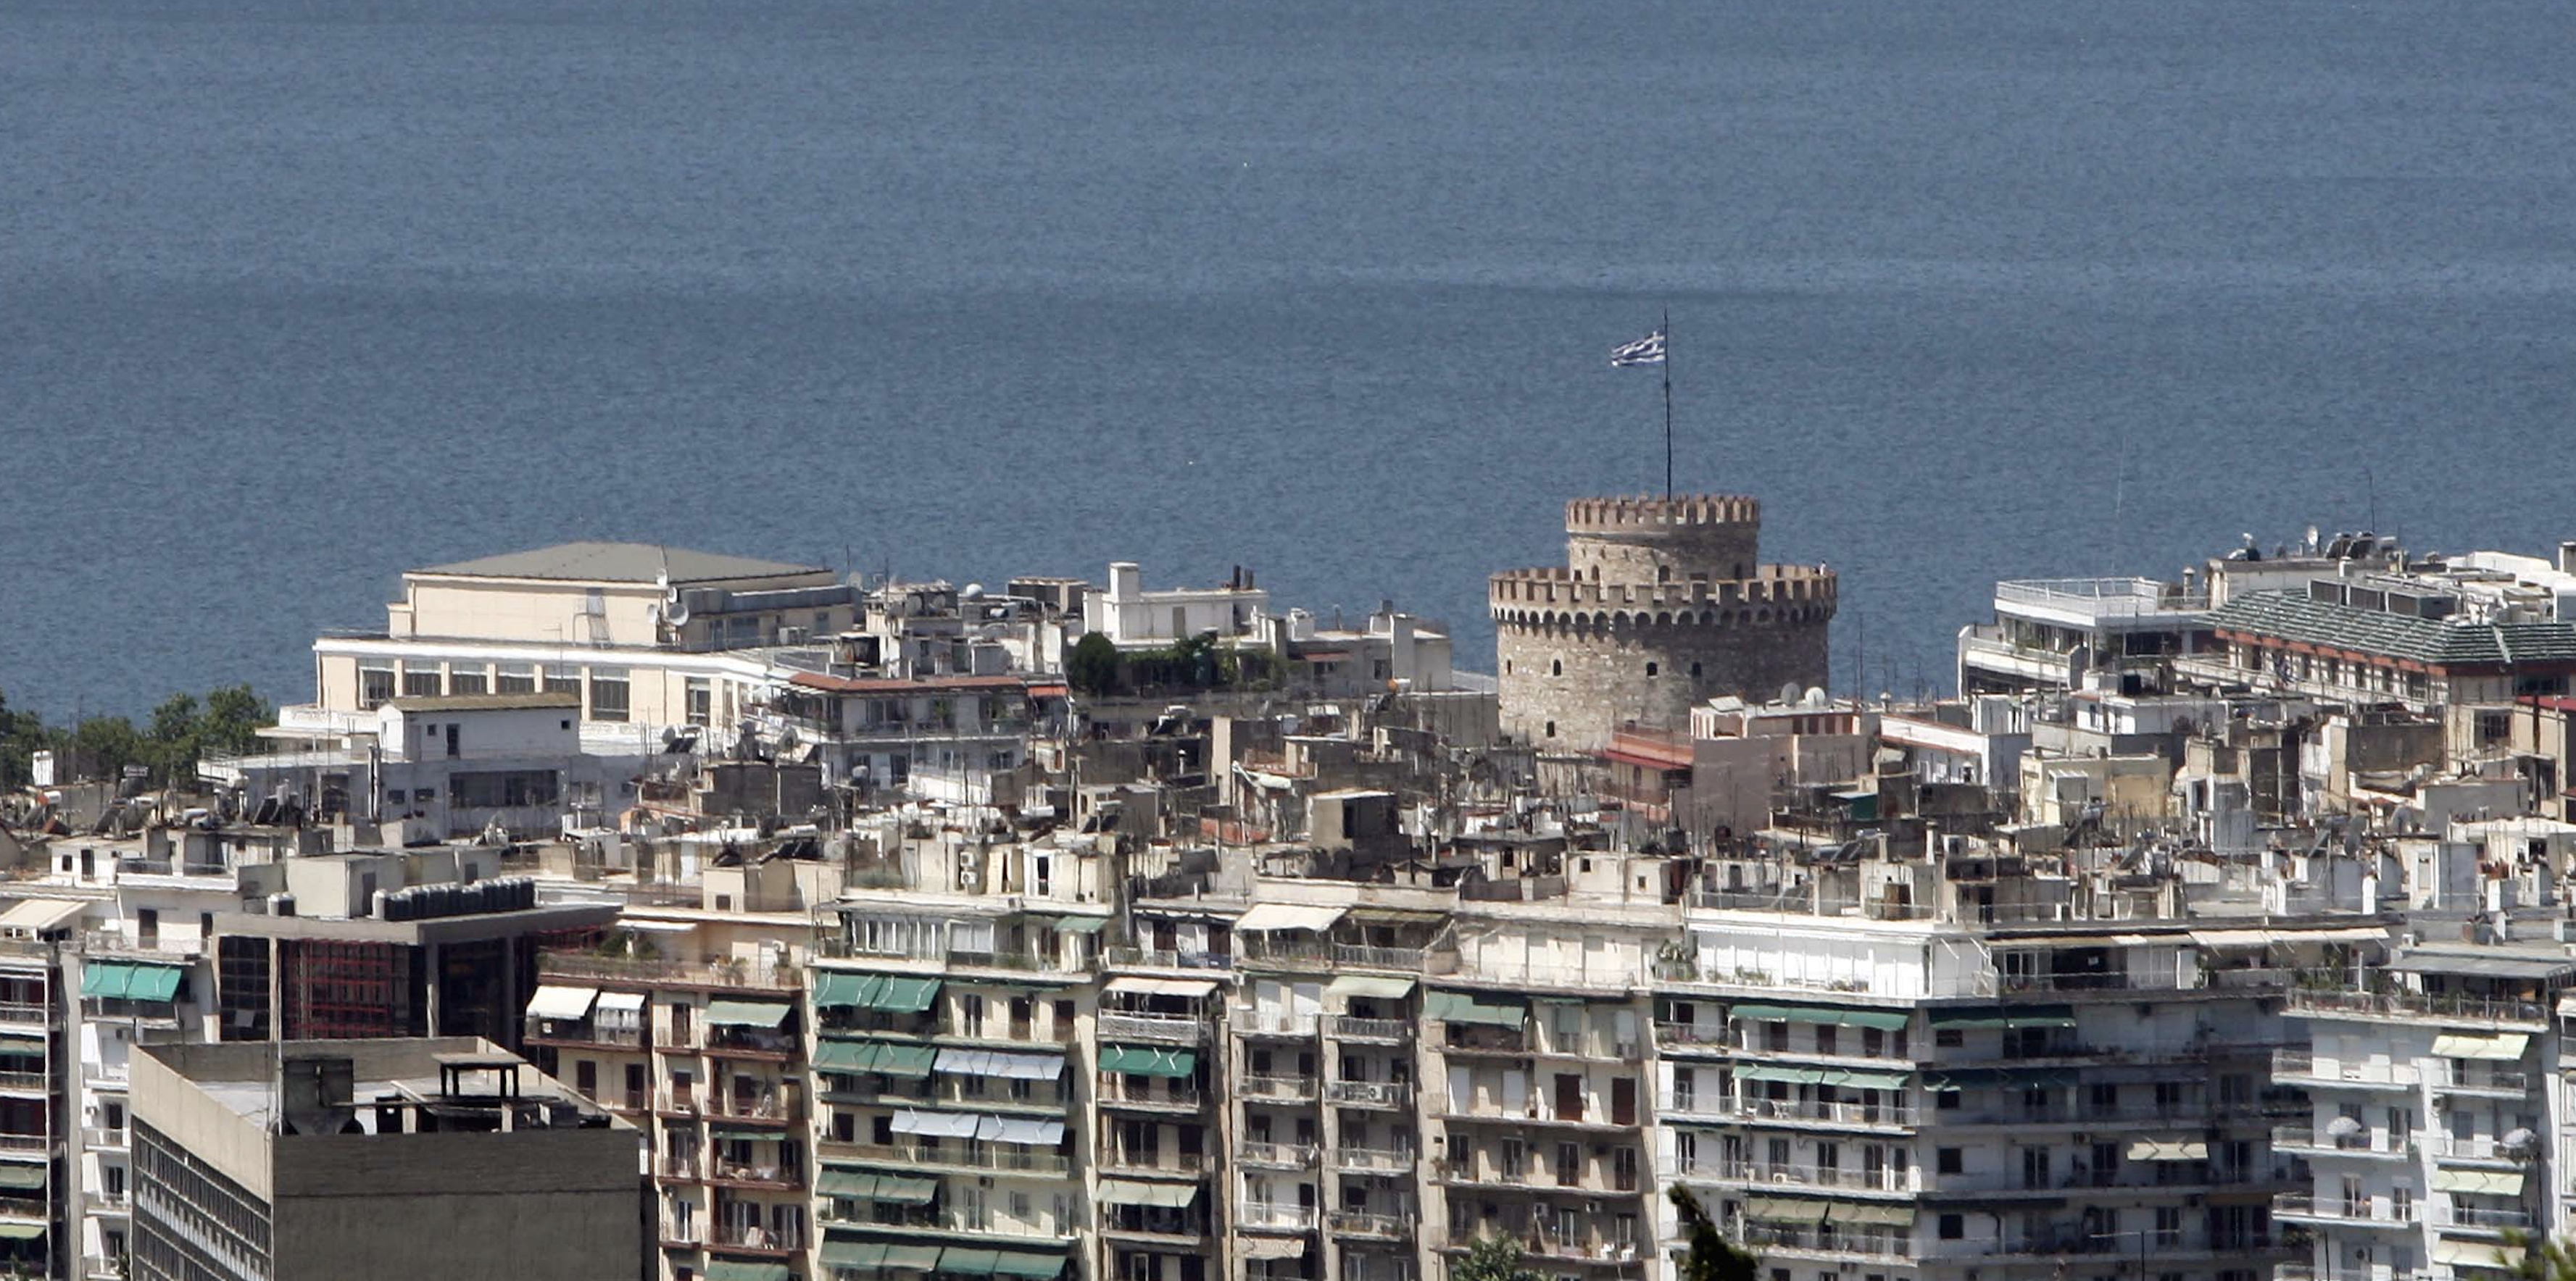 Ειδική συνεδρίαση για το Airbnb στο Δημοτικό Συμβούλιο Θεσσαλονίκης μετά από την καμπάνια της Πόλης Ανάποδα